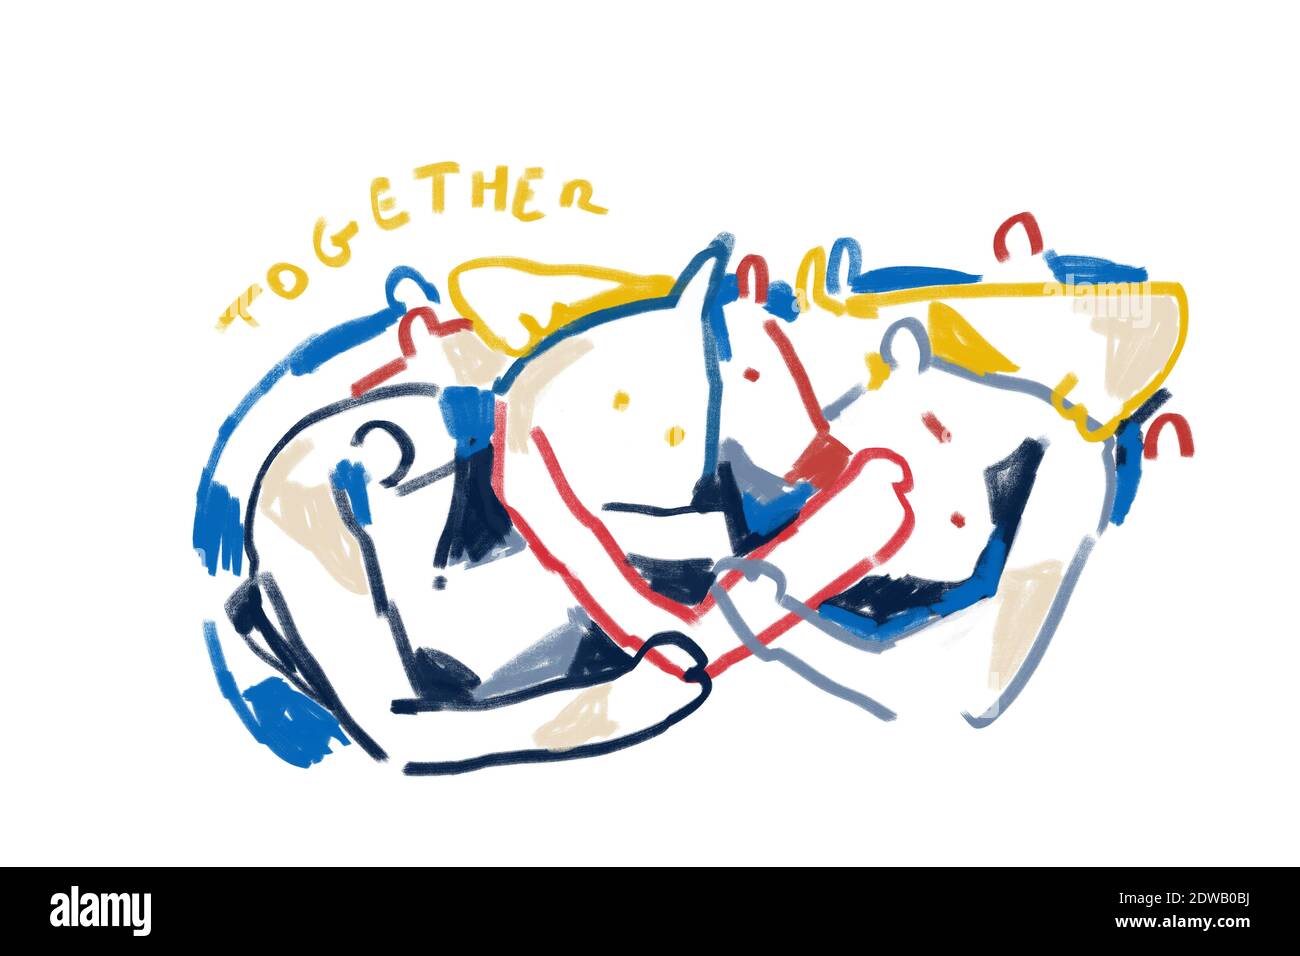 Personnes abstraites colorées, expressionnisme et style d'art Keith Haring. Personnes avec mention ensemble. Dessin de peinture avec couleur primaire, pour impression et W Banque D'Images